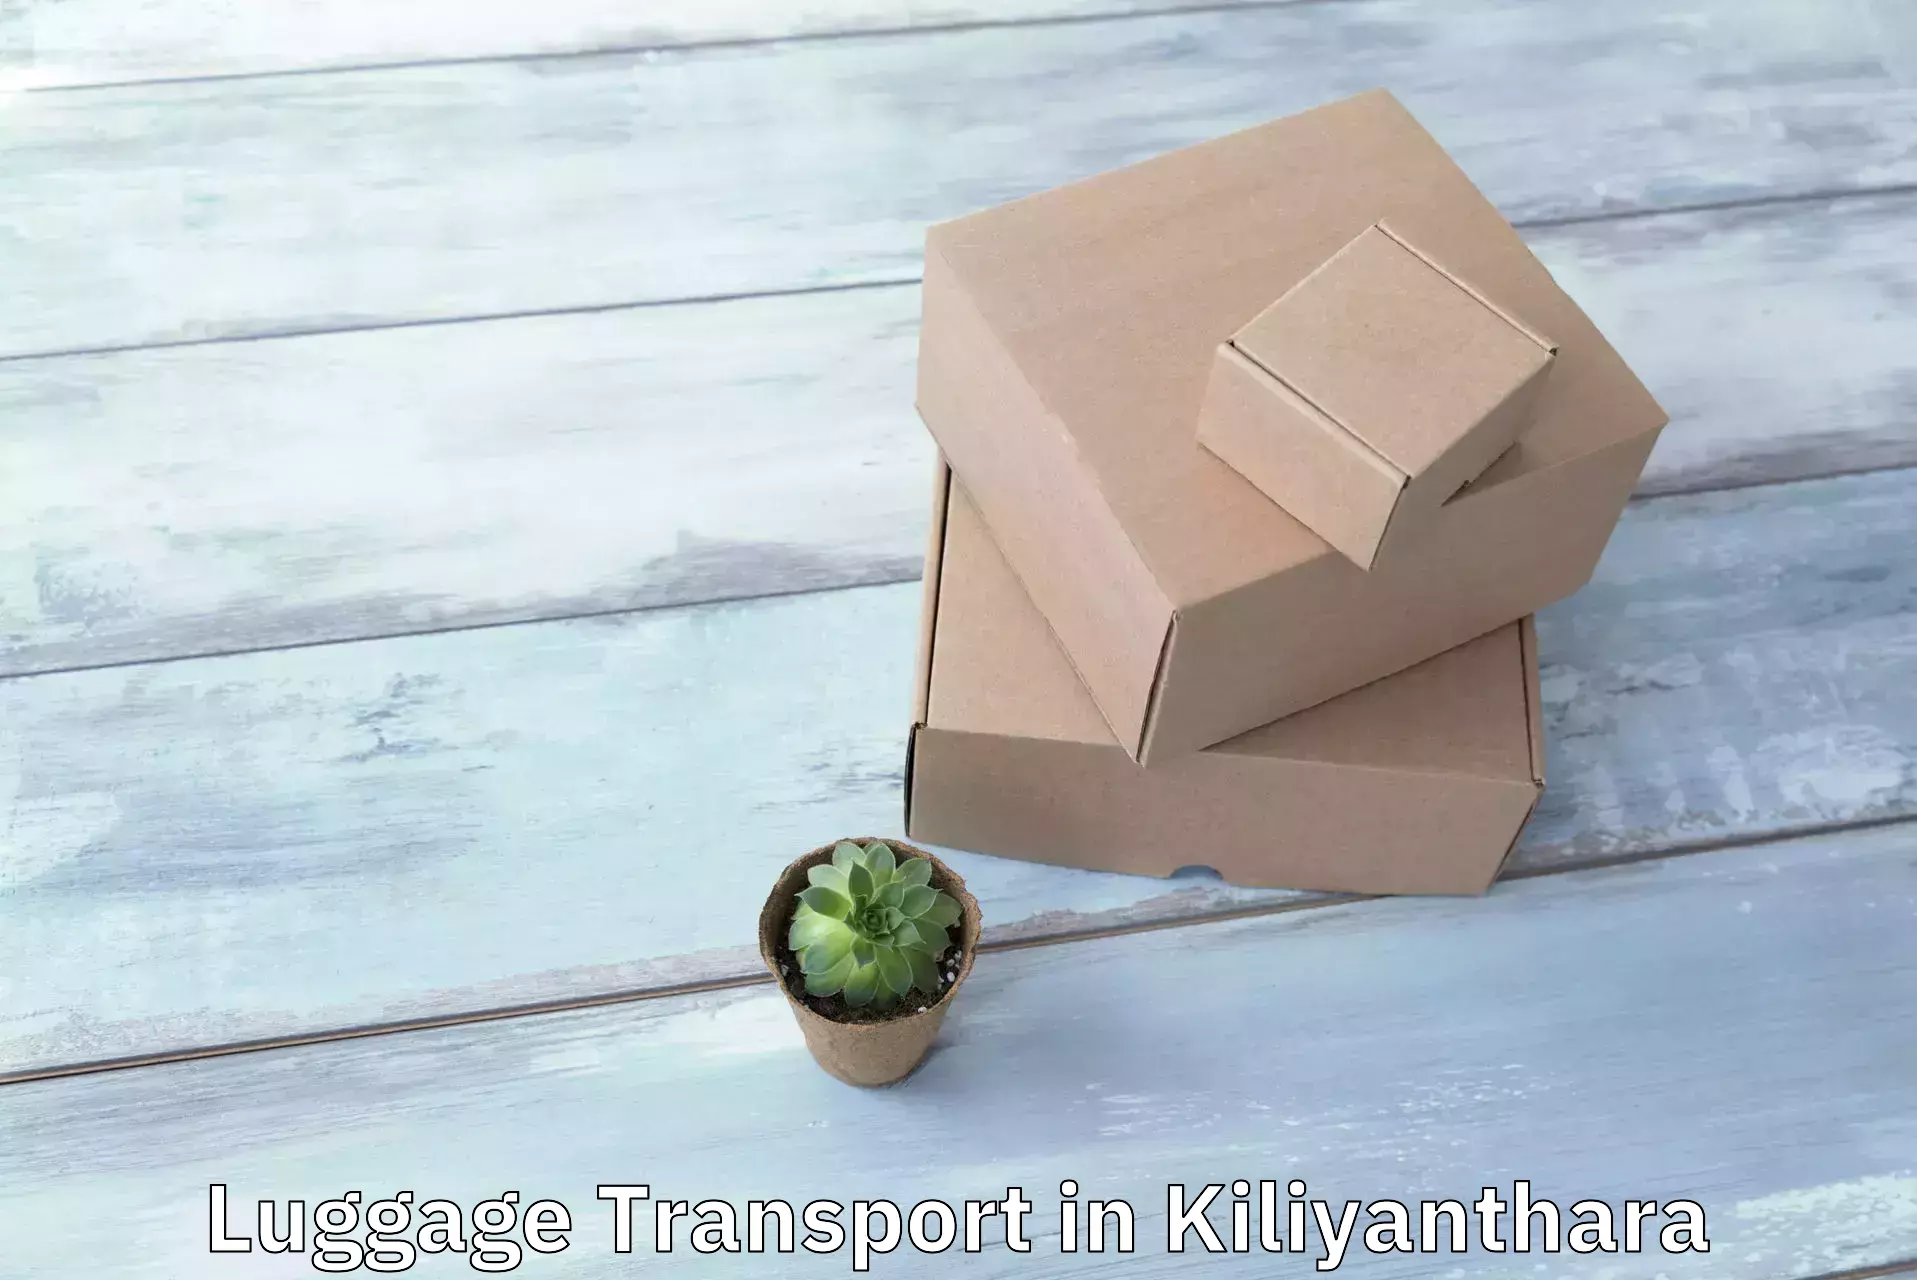 Efficient baggage transport in Kiliyanthara